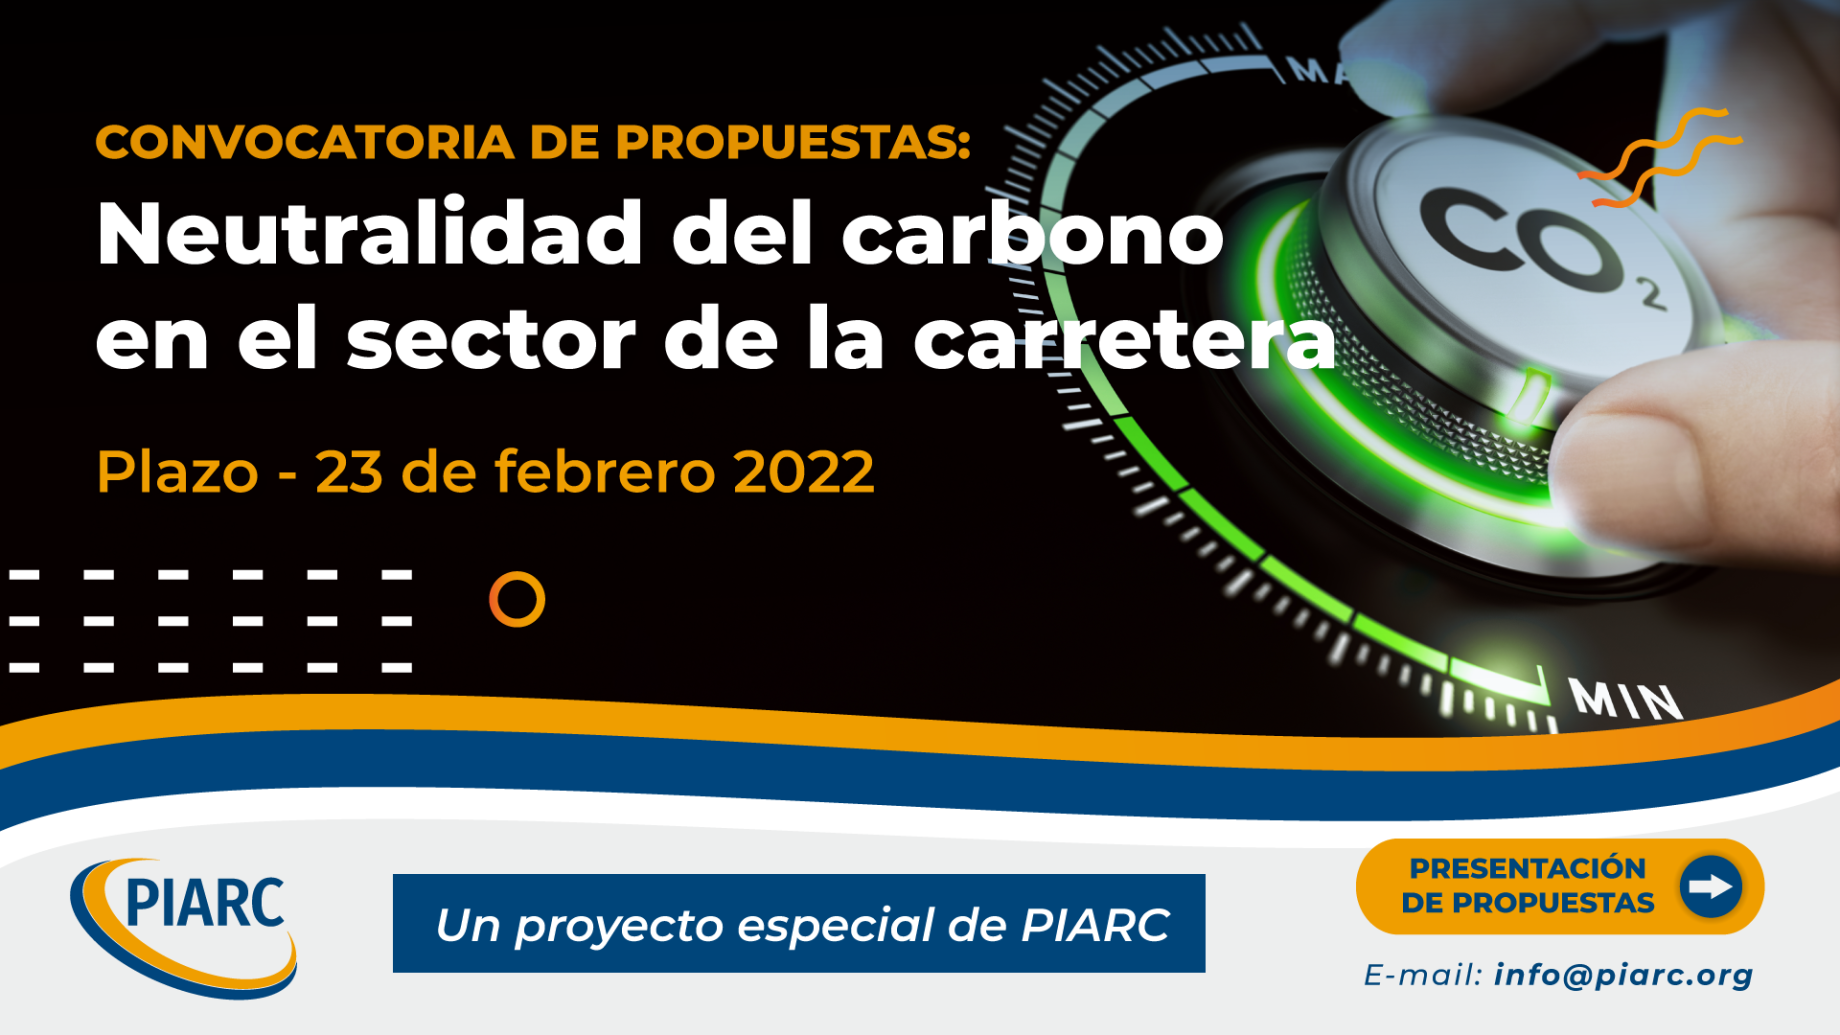 PIARC lanza una nueva convocatoria de propuestas: proyecto especial sobre neutralidad de carbono del sector vial. ¡Participe!